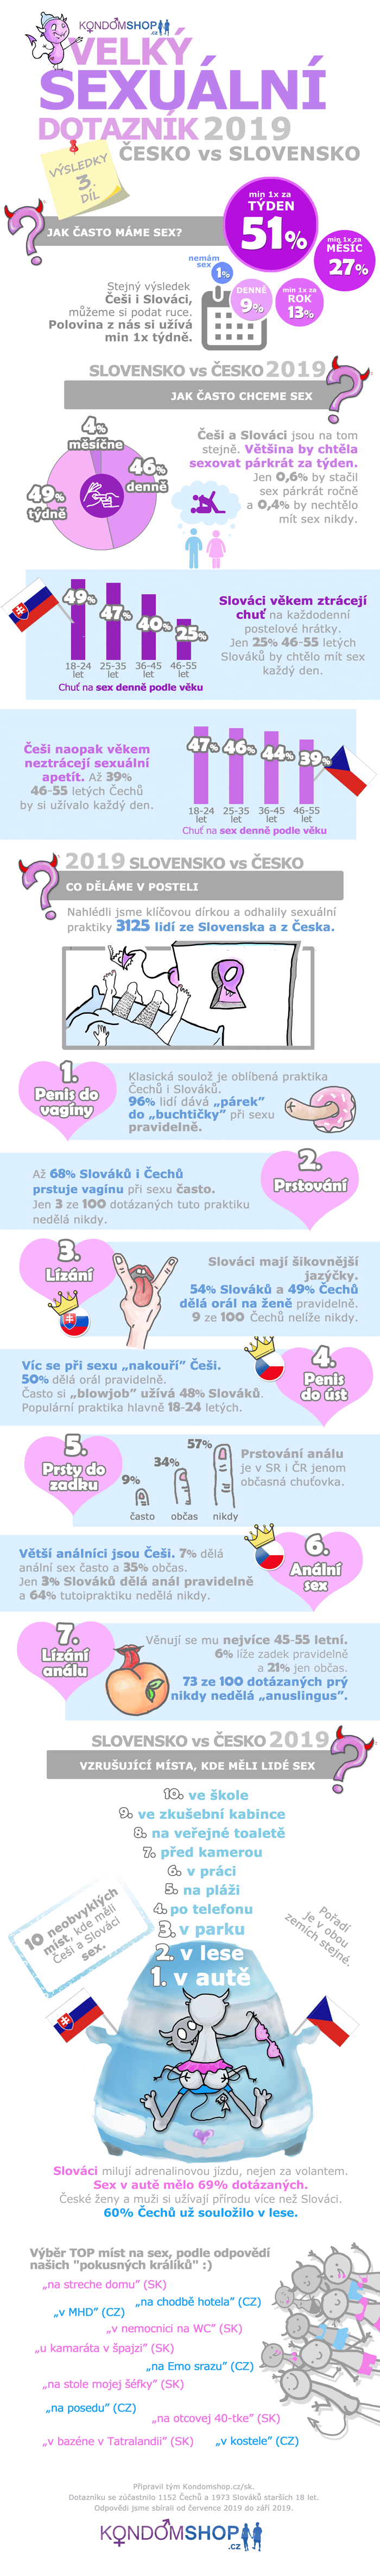 infografika velký sexuální průzkum 2019 Slovensko vs Česko